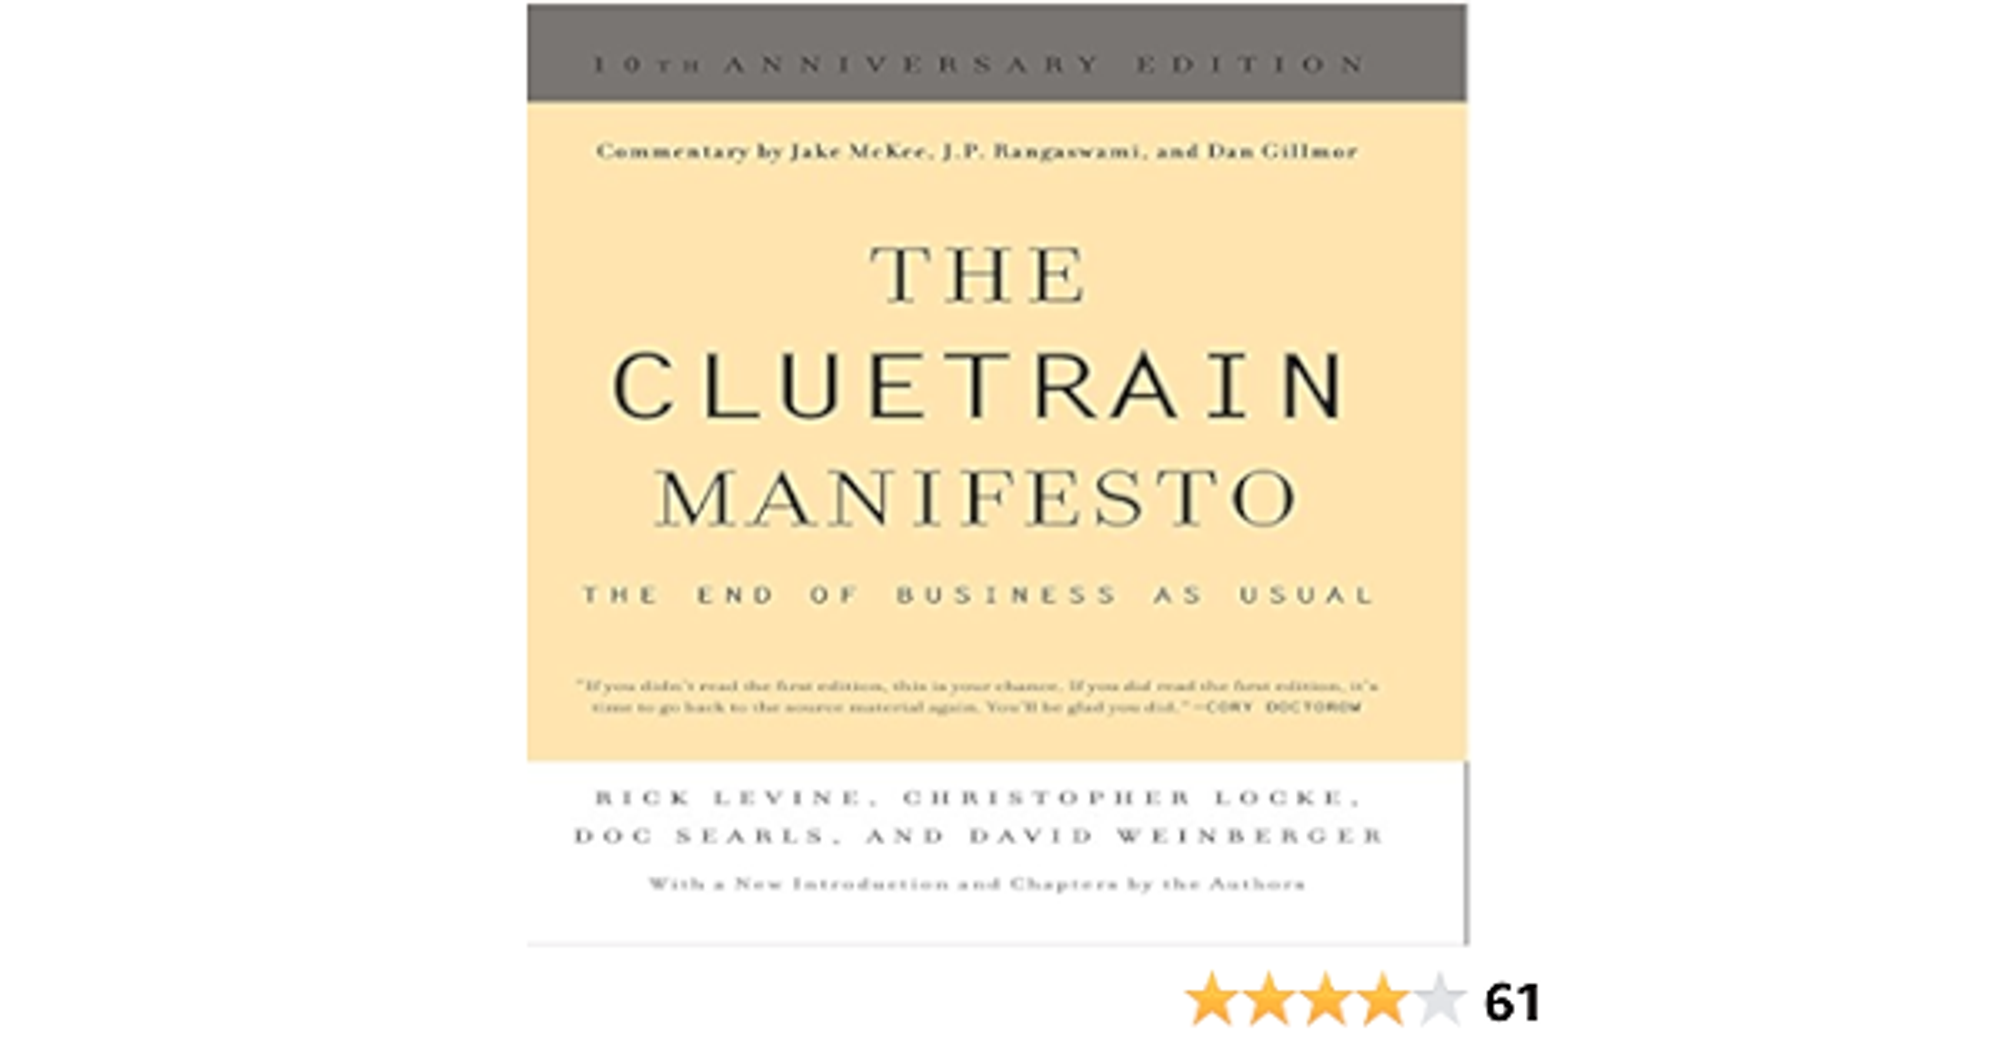 The Cluetrain Manifesto: 10th Anniversary Edition